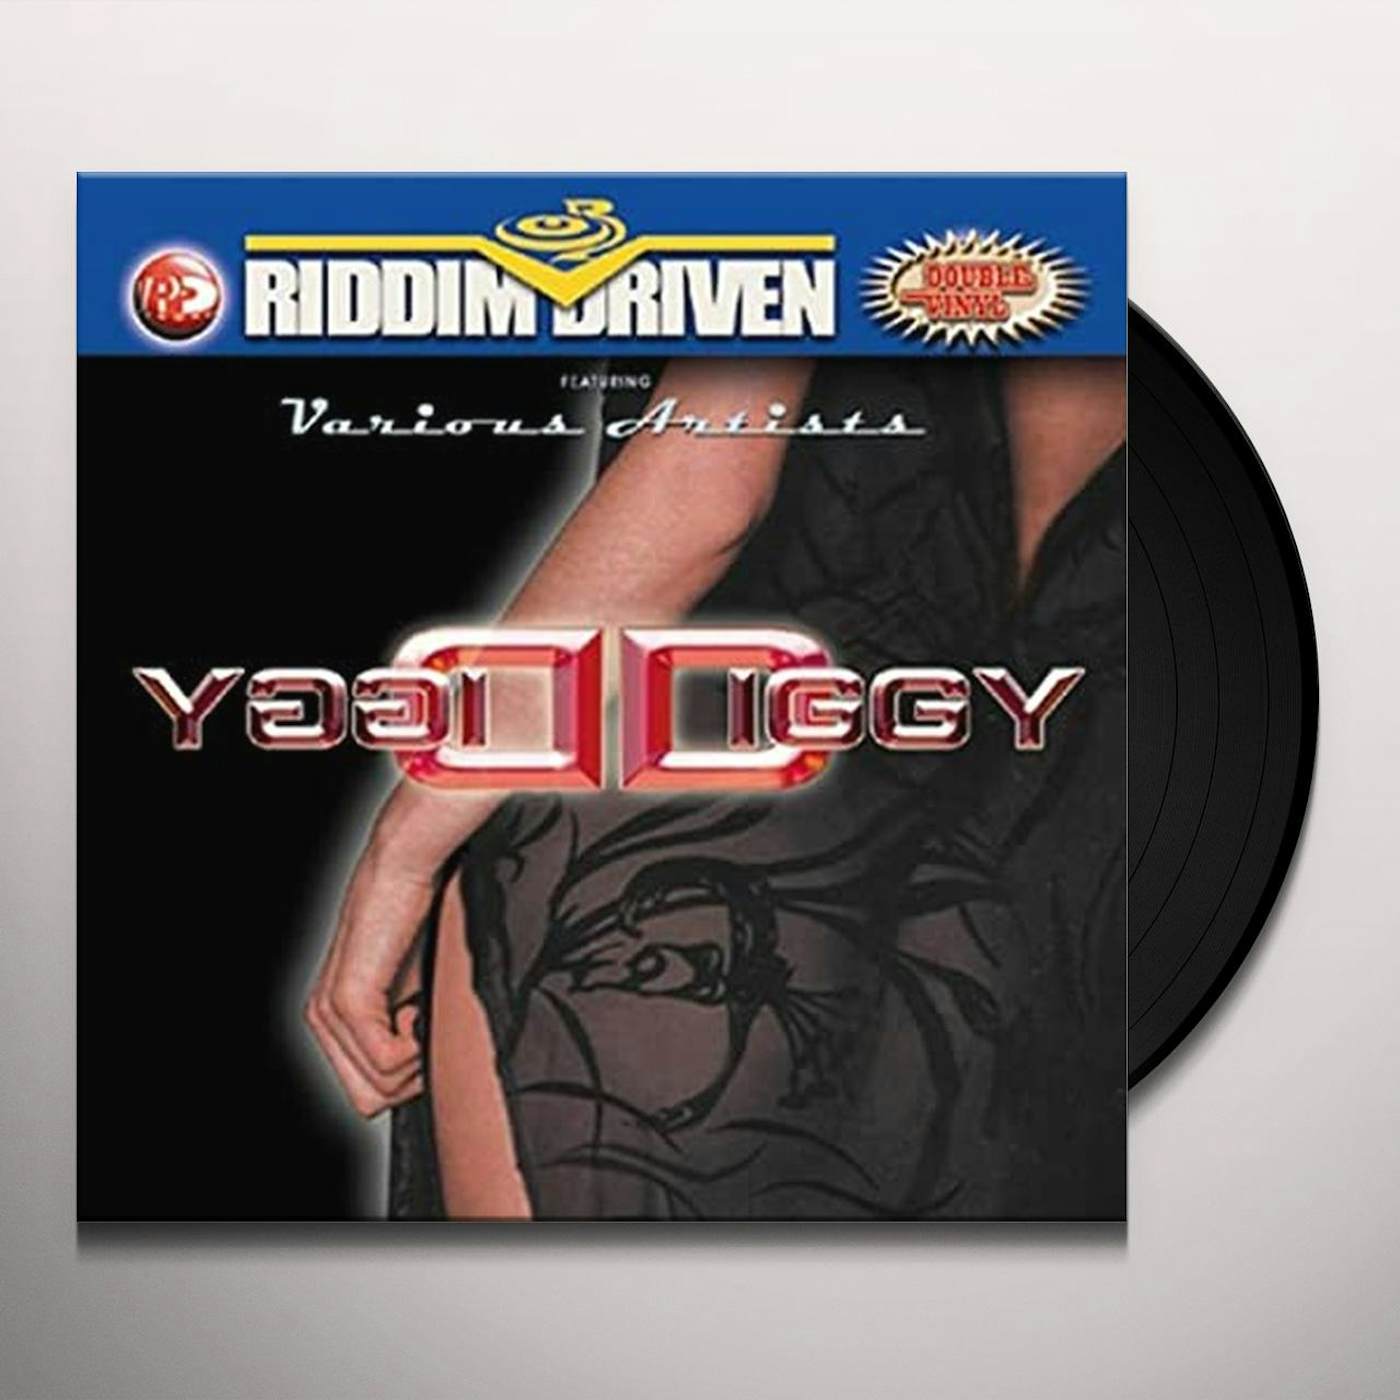 RIDDIM DRIVEN: DIGGY DIGGY / VARIOUS Vinyl Record